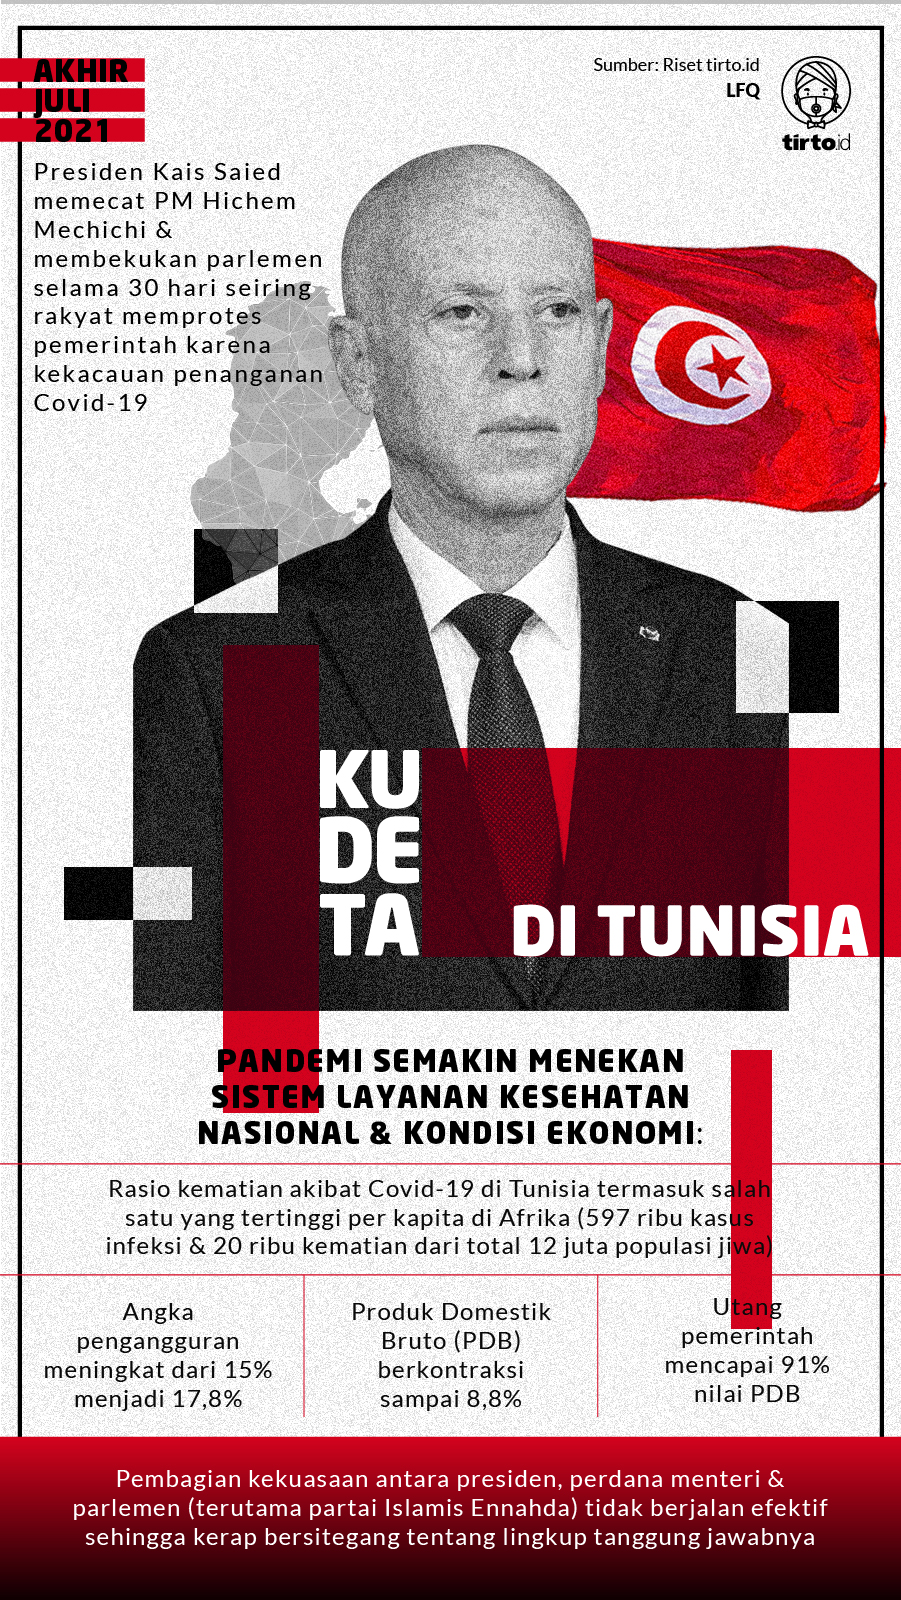 Infografik Kudeta di Tunisia